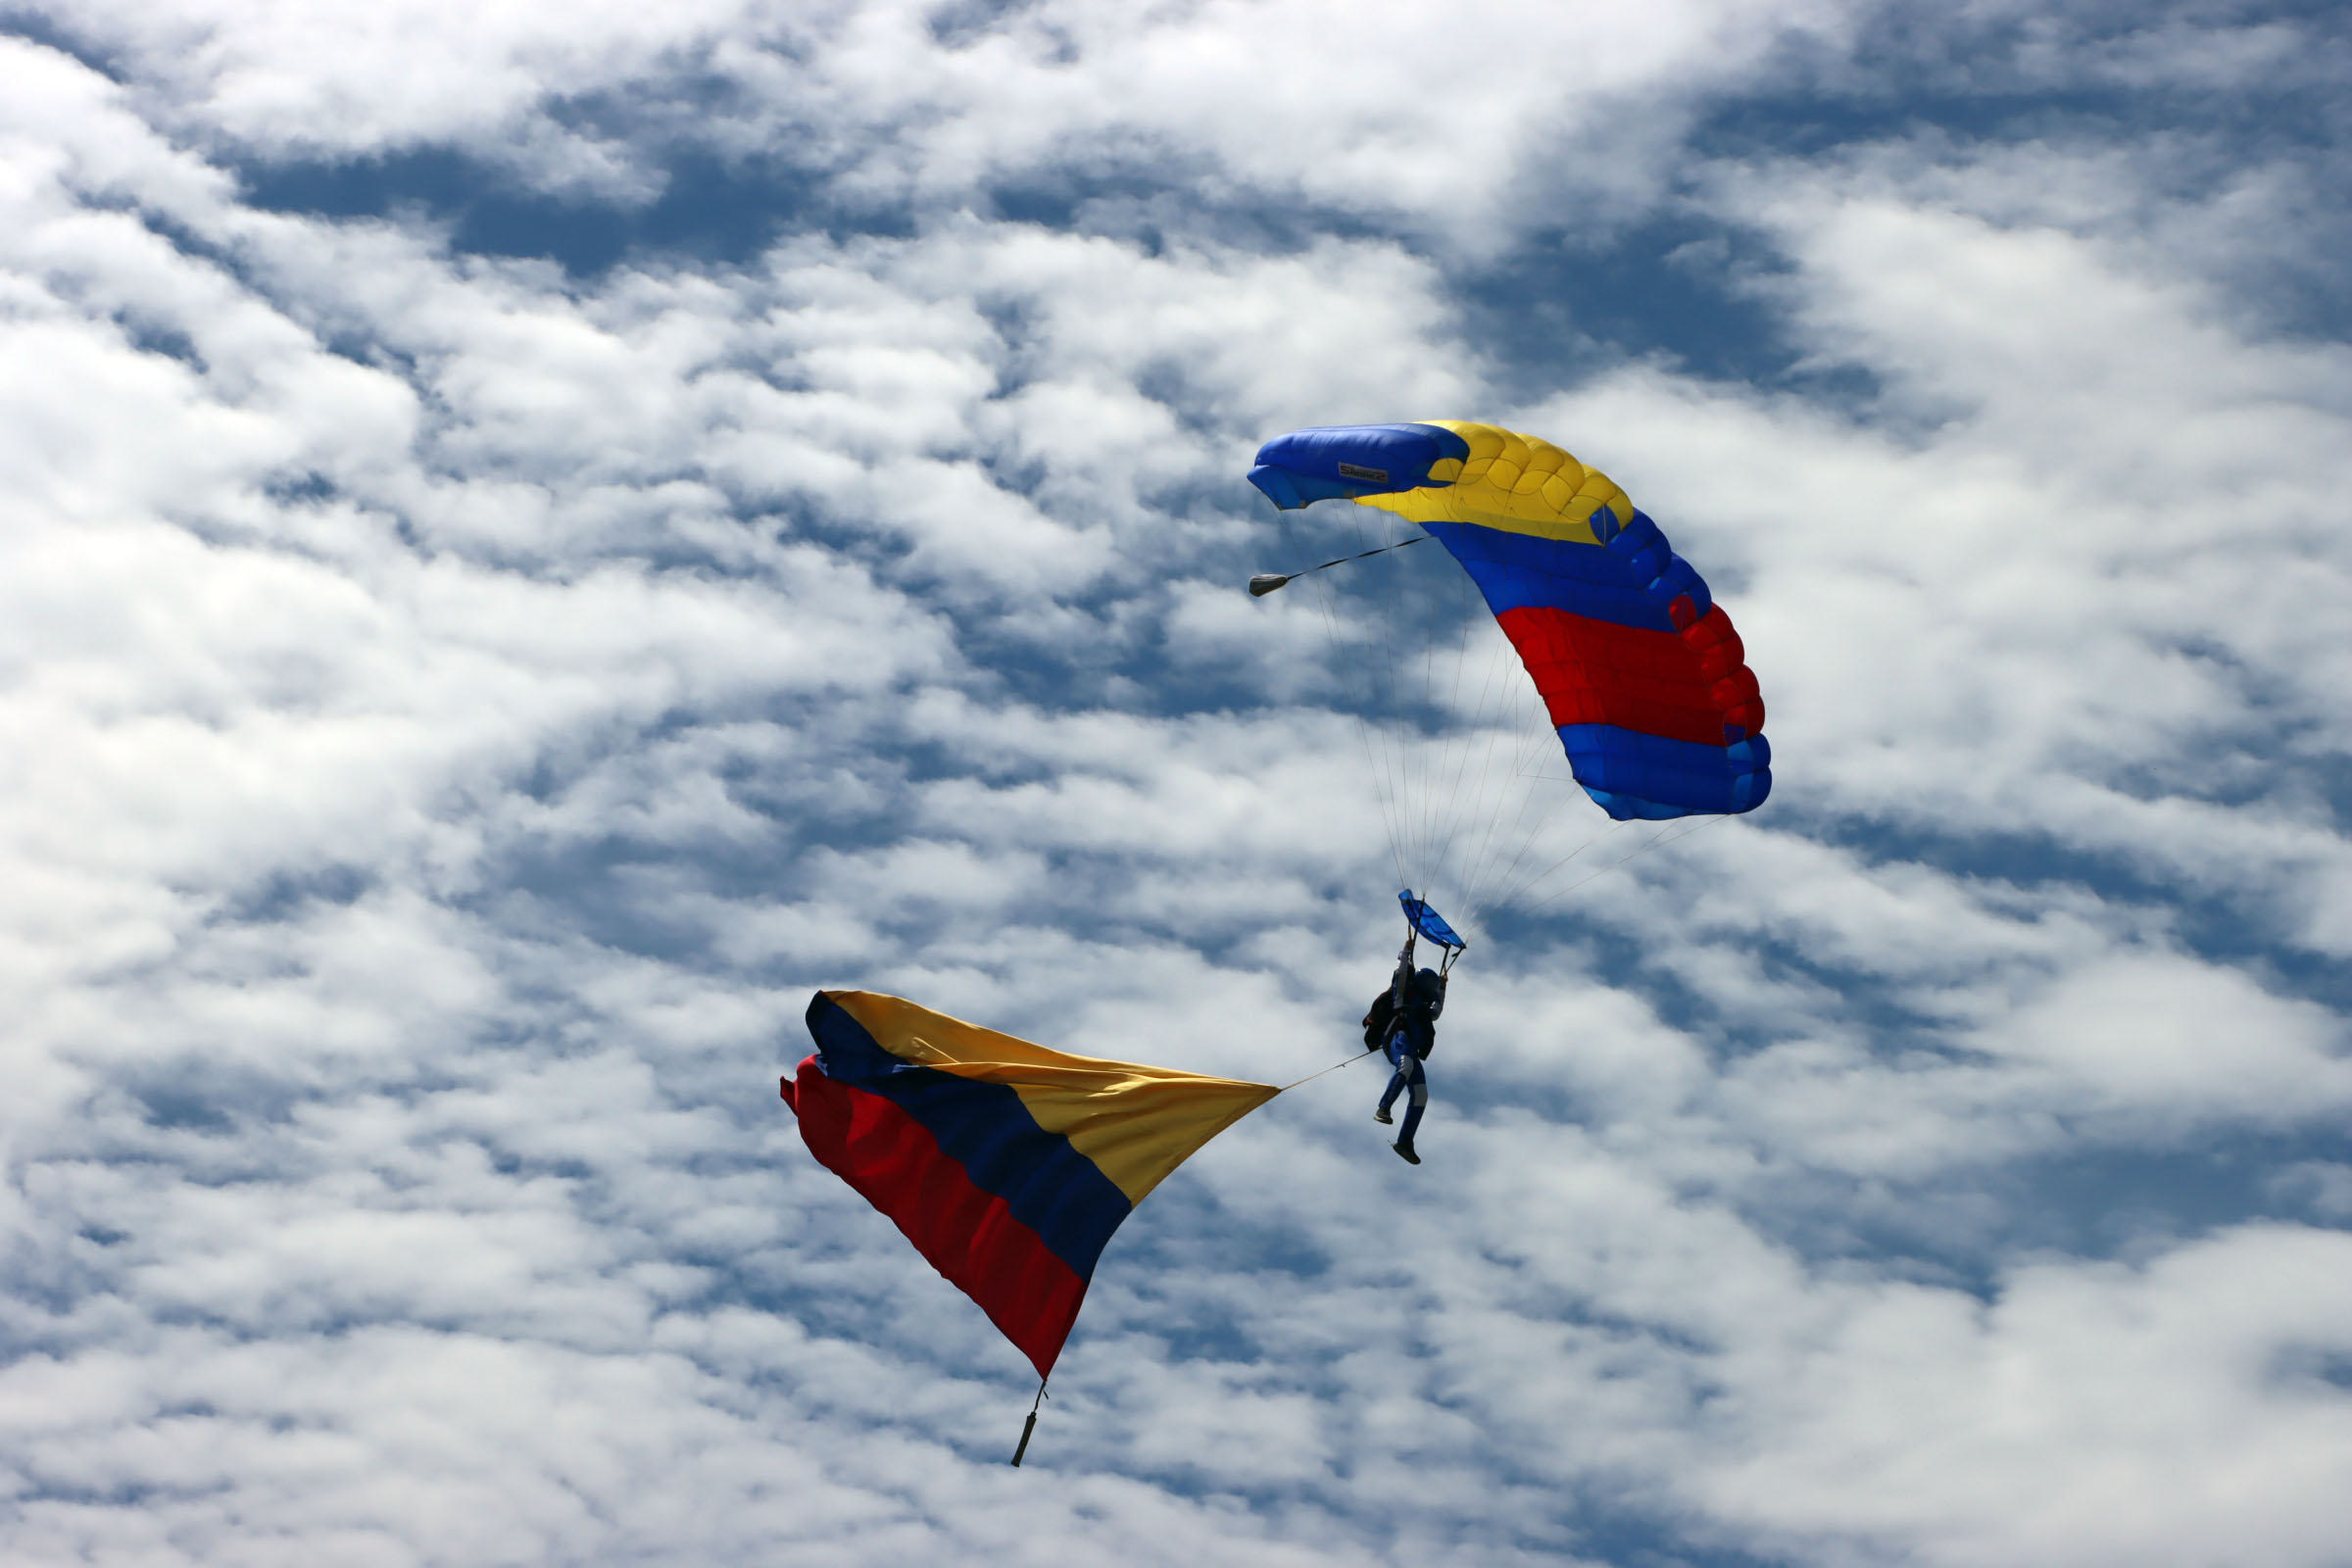 Equipo Águila de Gules de la Fuerza Aérea en el campeonato Panamericano de paracaidismo